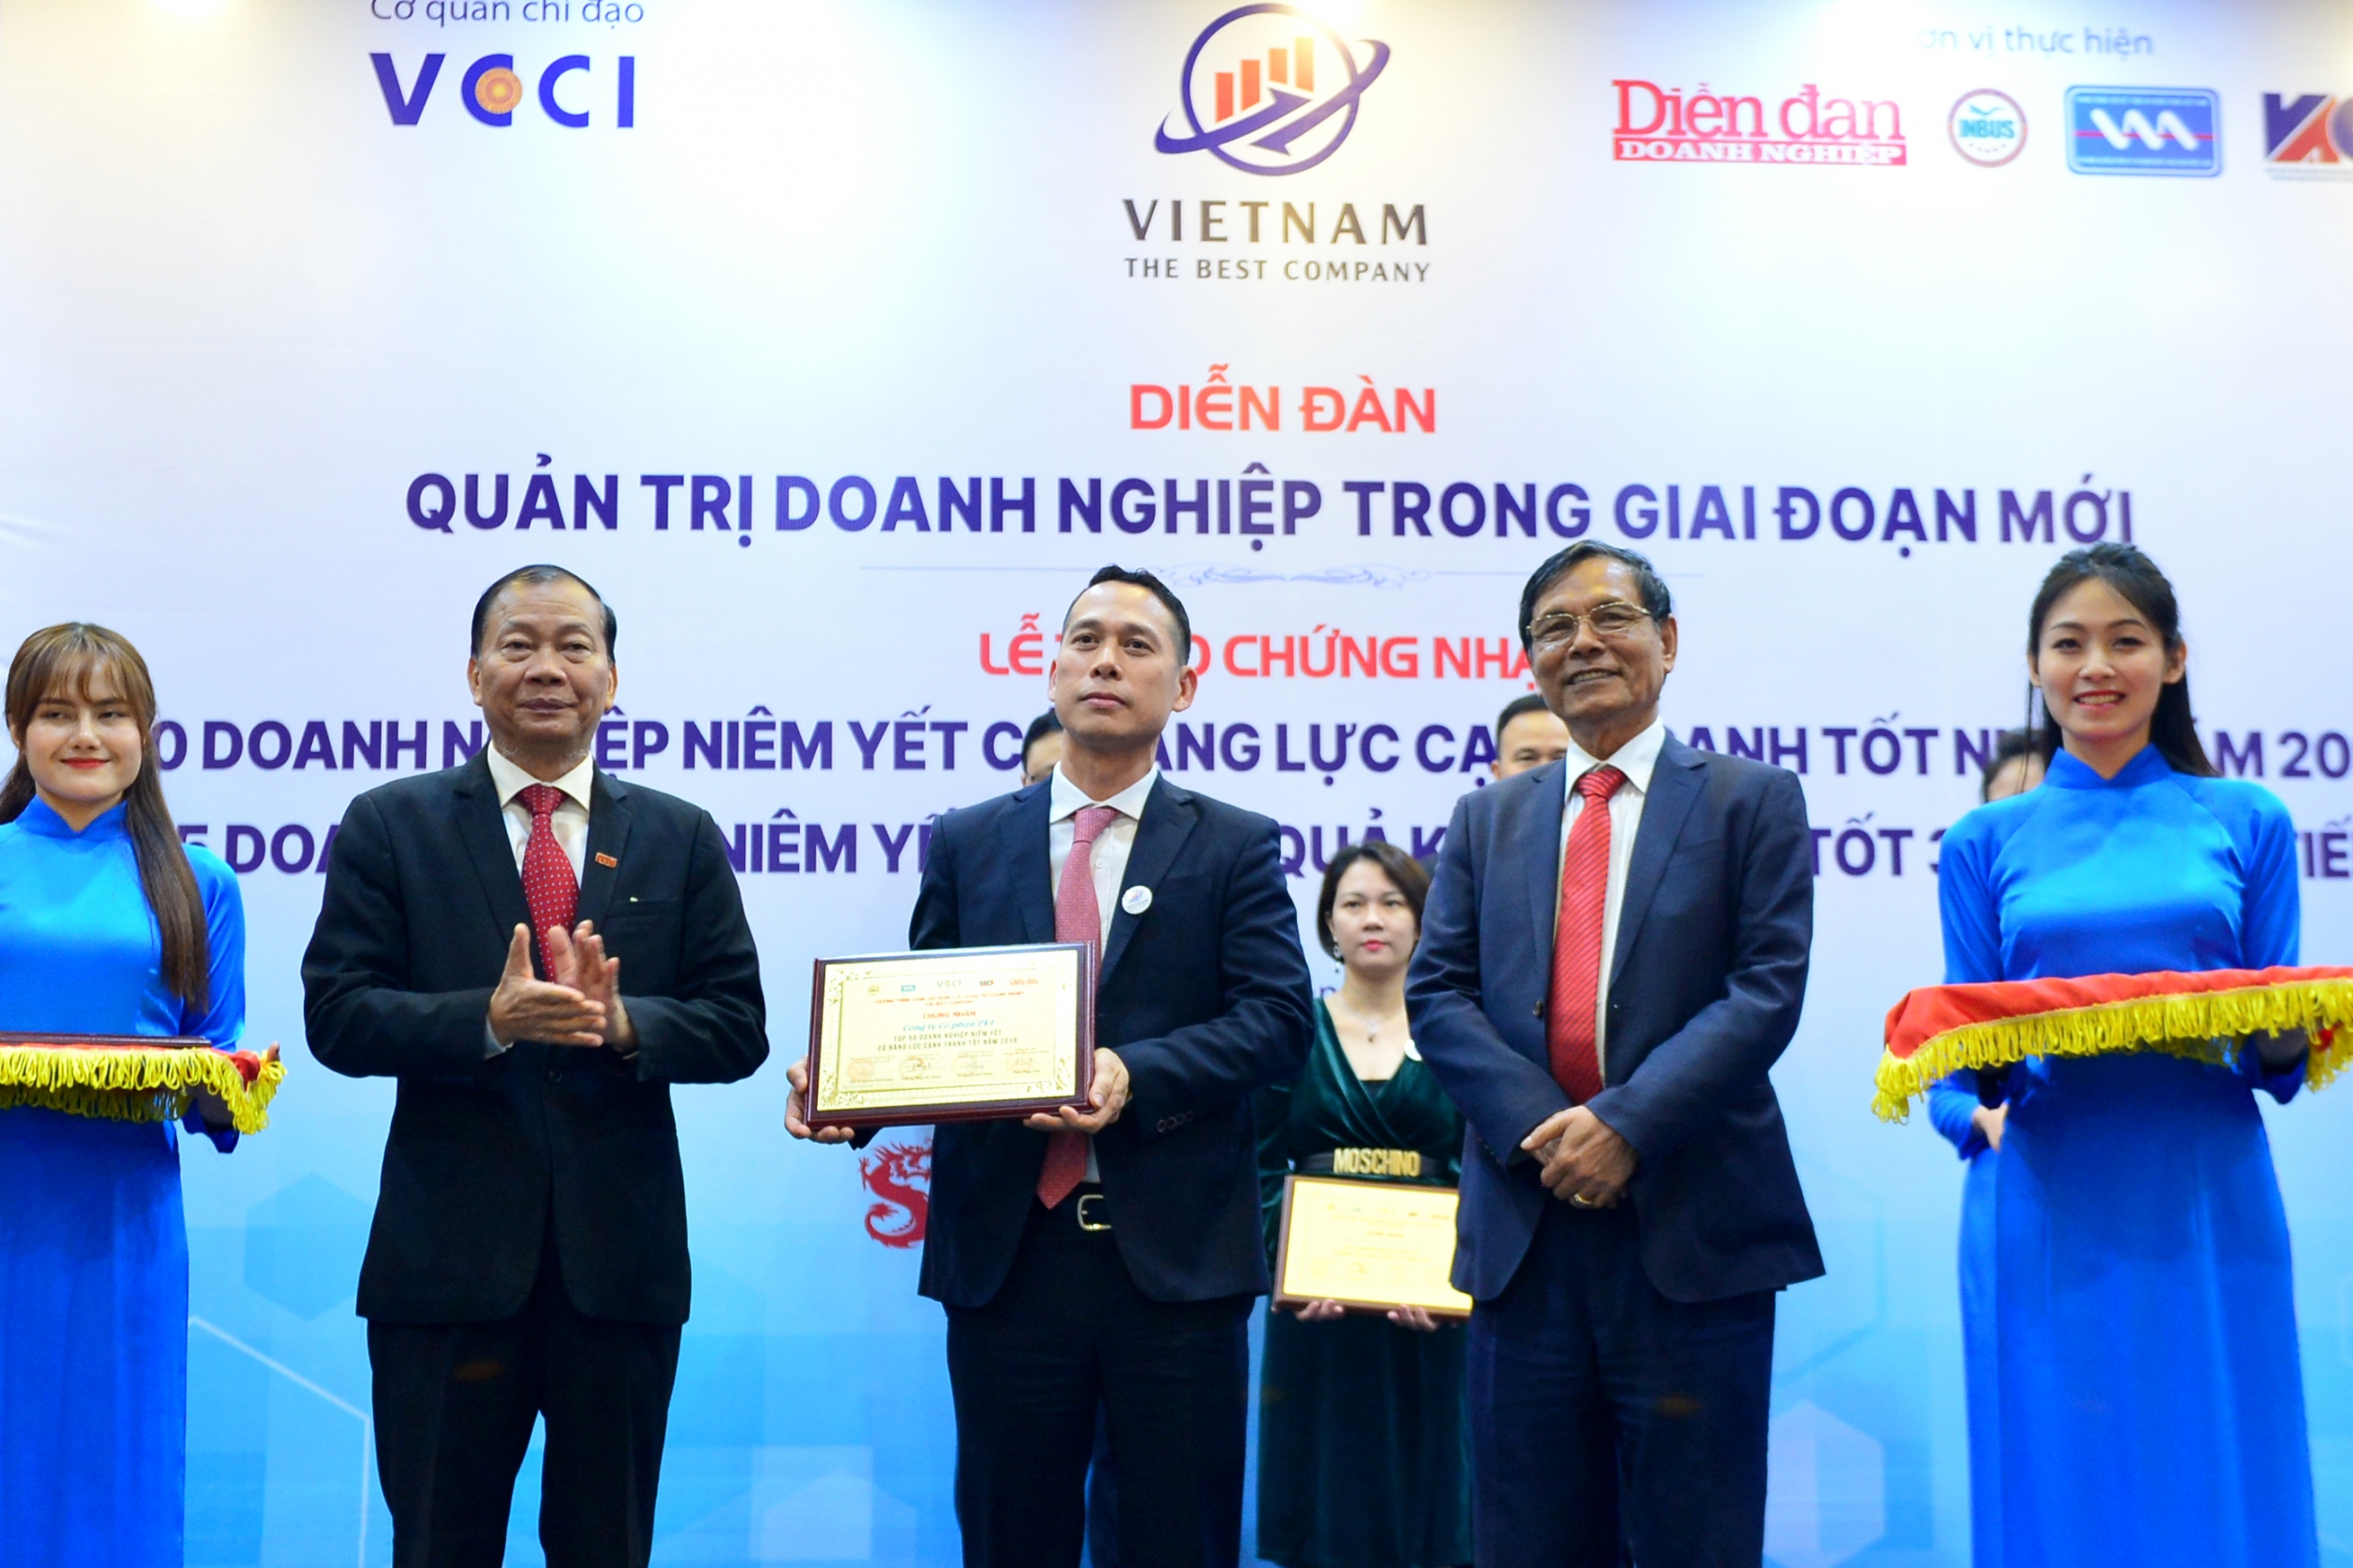 Ông Nguyễn Tuấn Anh- Phó giám đốc Ban QL&PTNNL đại diện PVI nhận giải thưởng